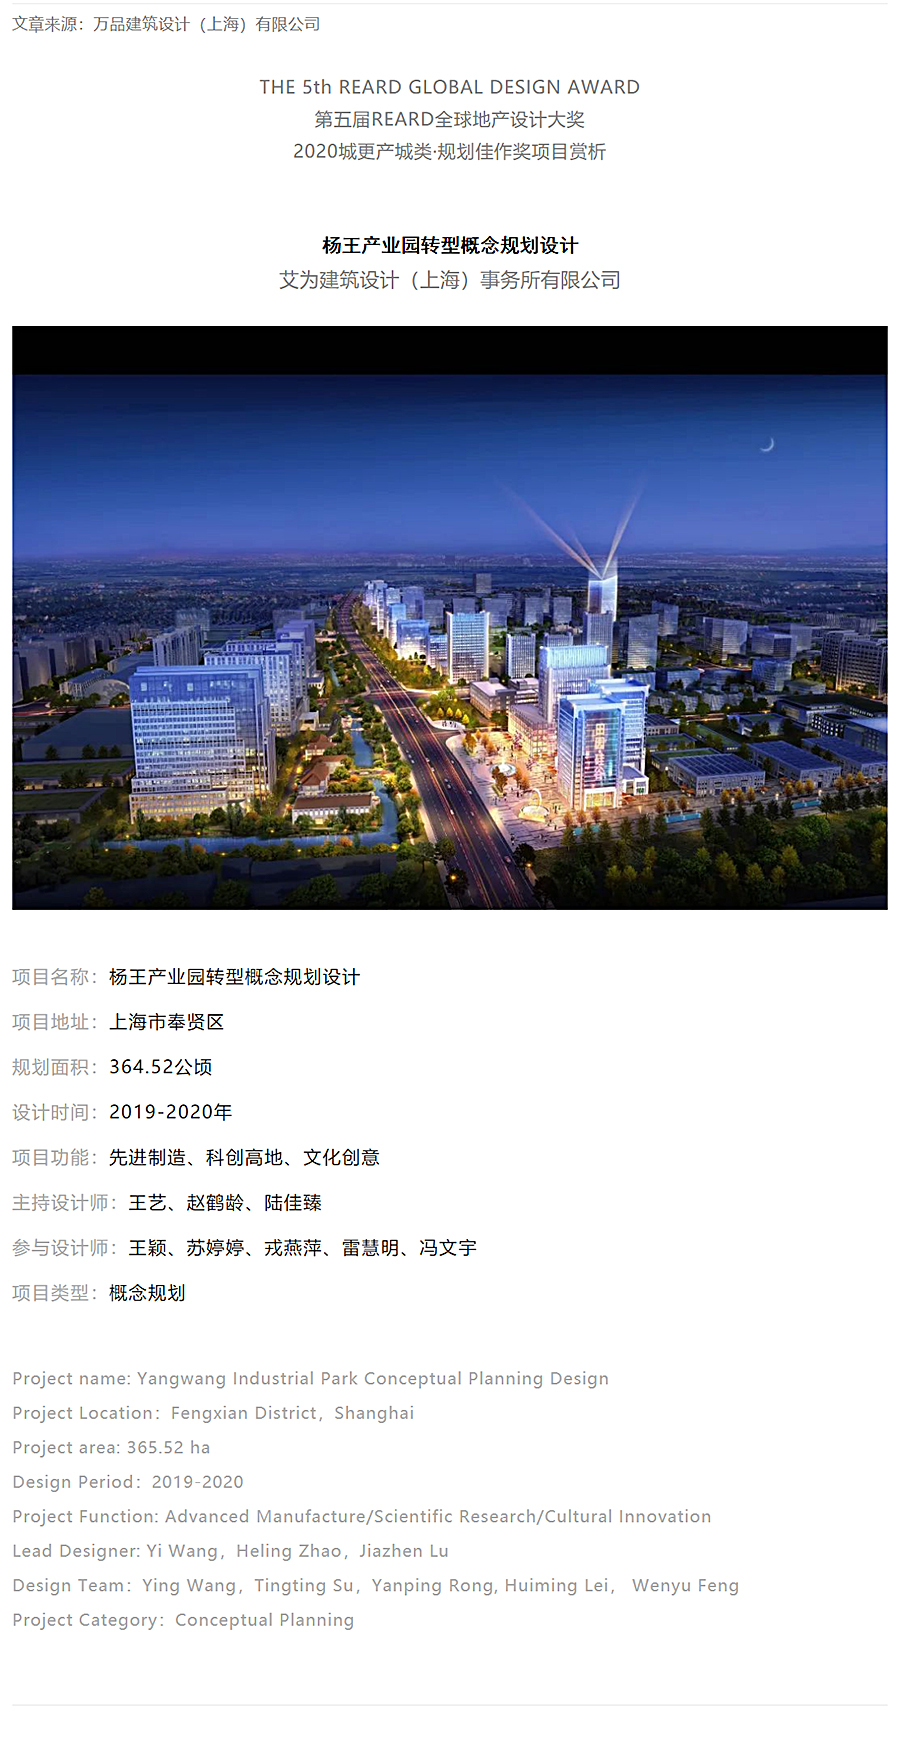 杨王产业园转型概念规划设计-_-万品设计-2020-REARD大奖项目赏析_0000_图层-1.jpg